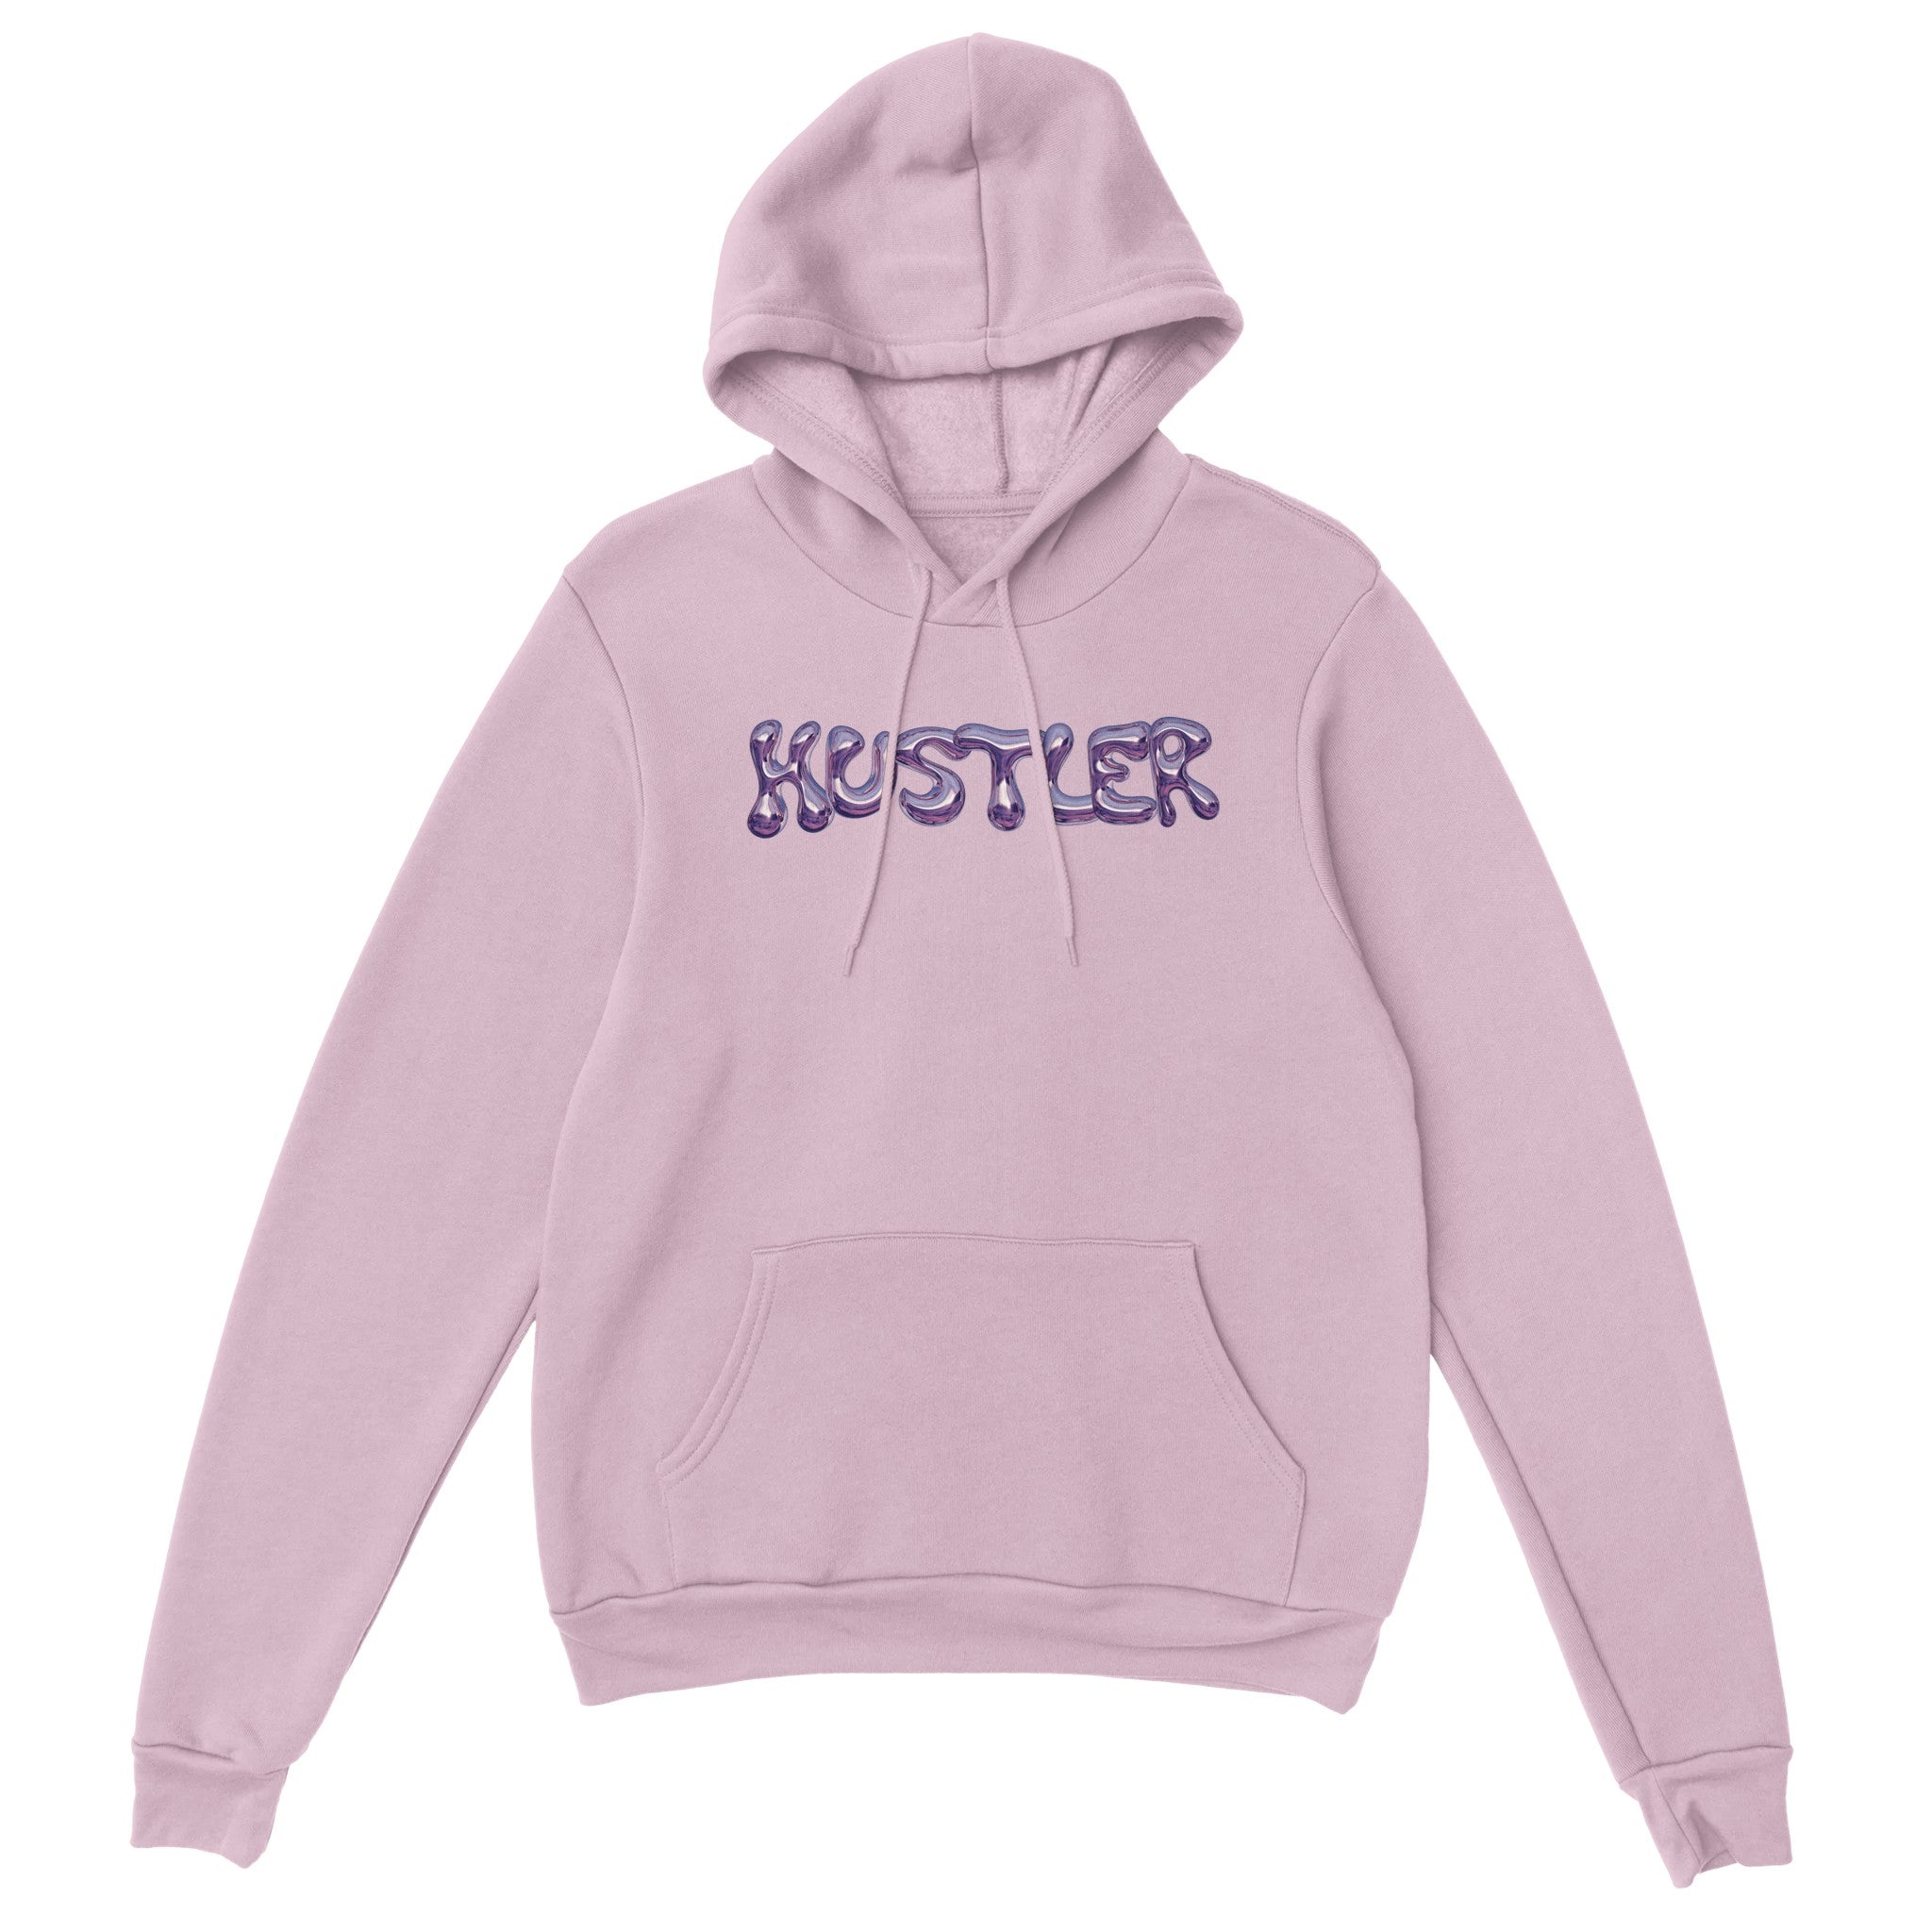 'Hustler' hoodie - In Print We Trust